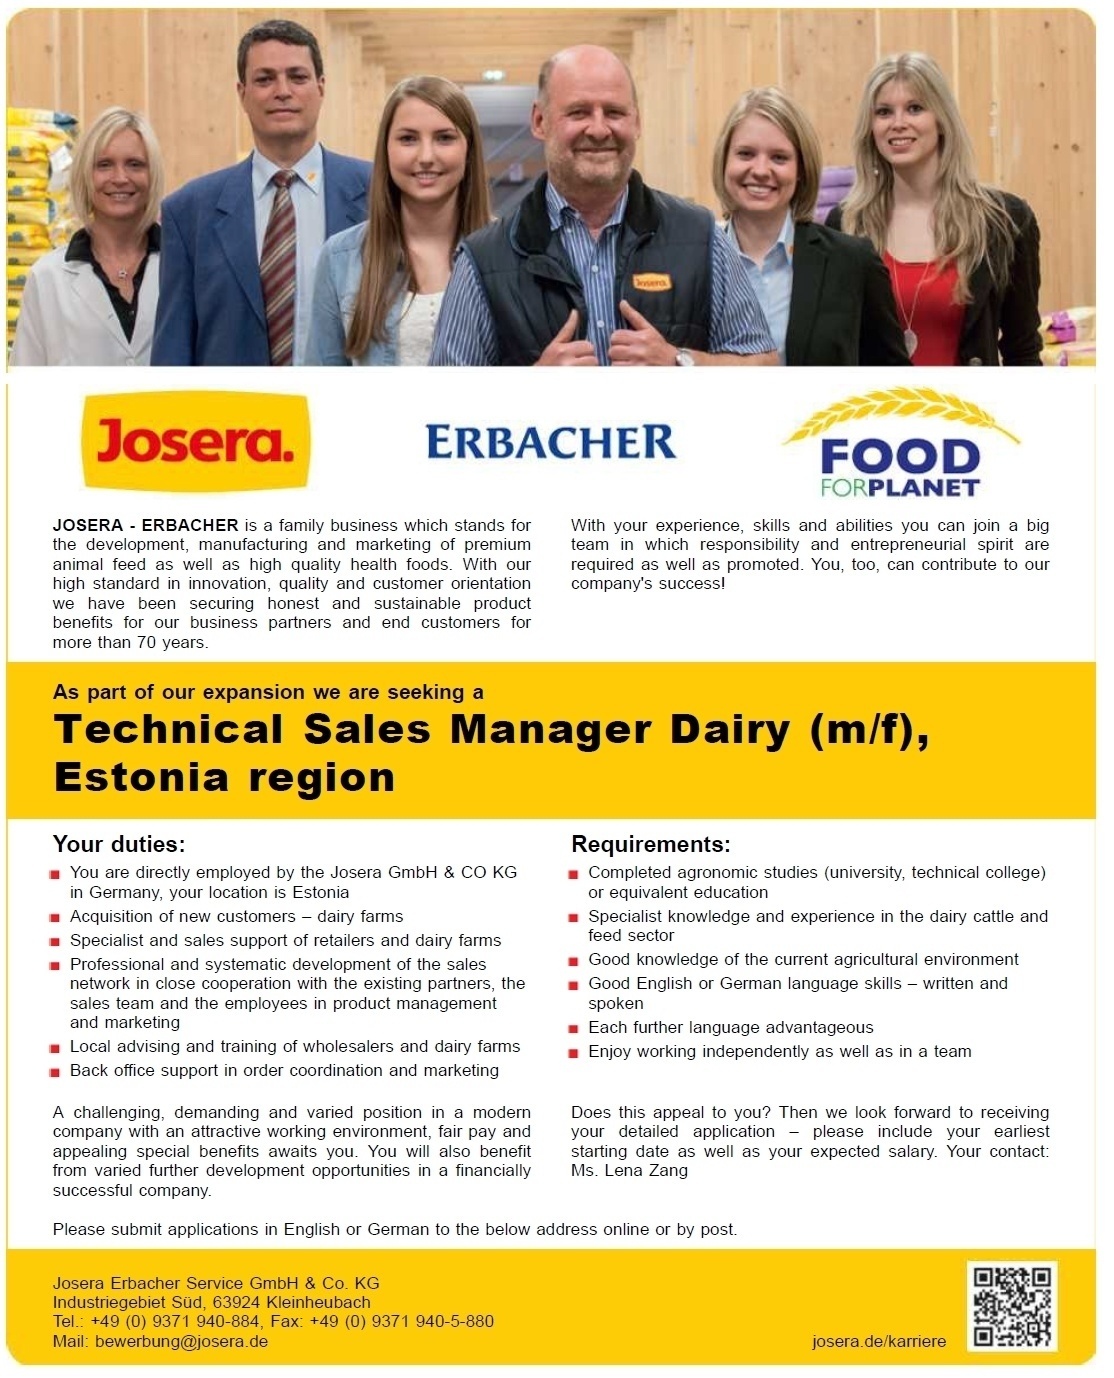 Josera Erbacher Service Technical Sales Manager Dairy (m/f), Estonia region